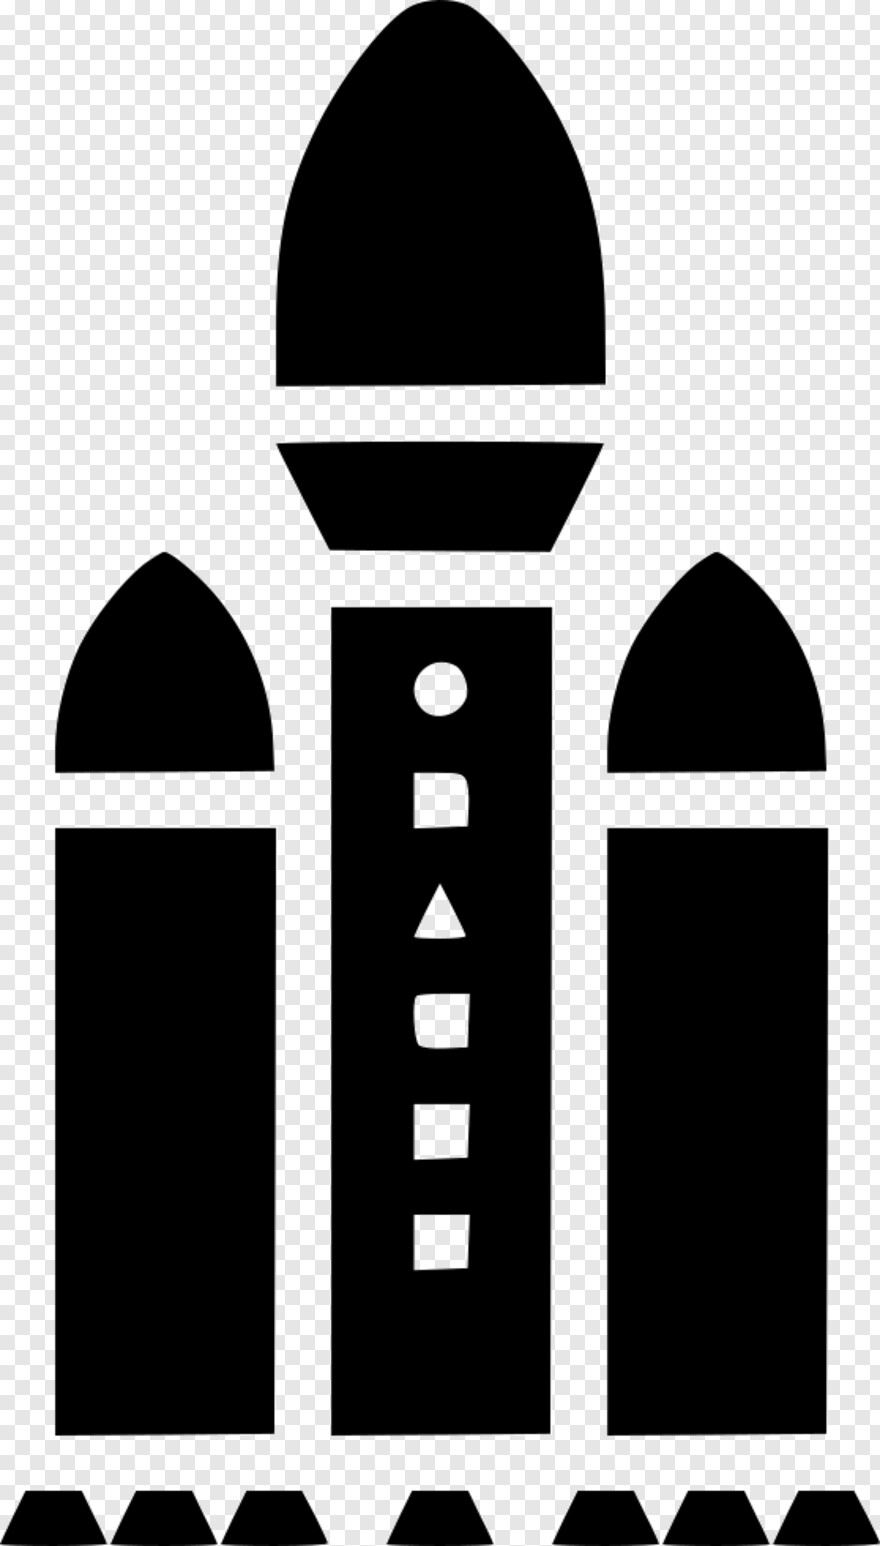  9/11, Millennium Falcon, Spacex Logo, Falcon, Cloud 9 Logo, Captain Falcon